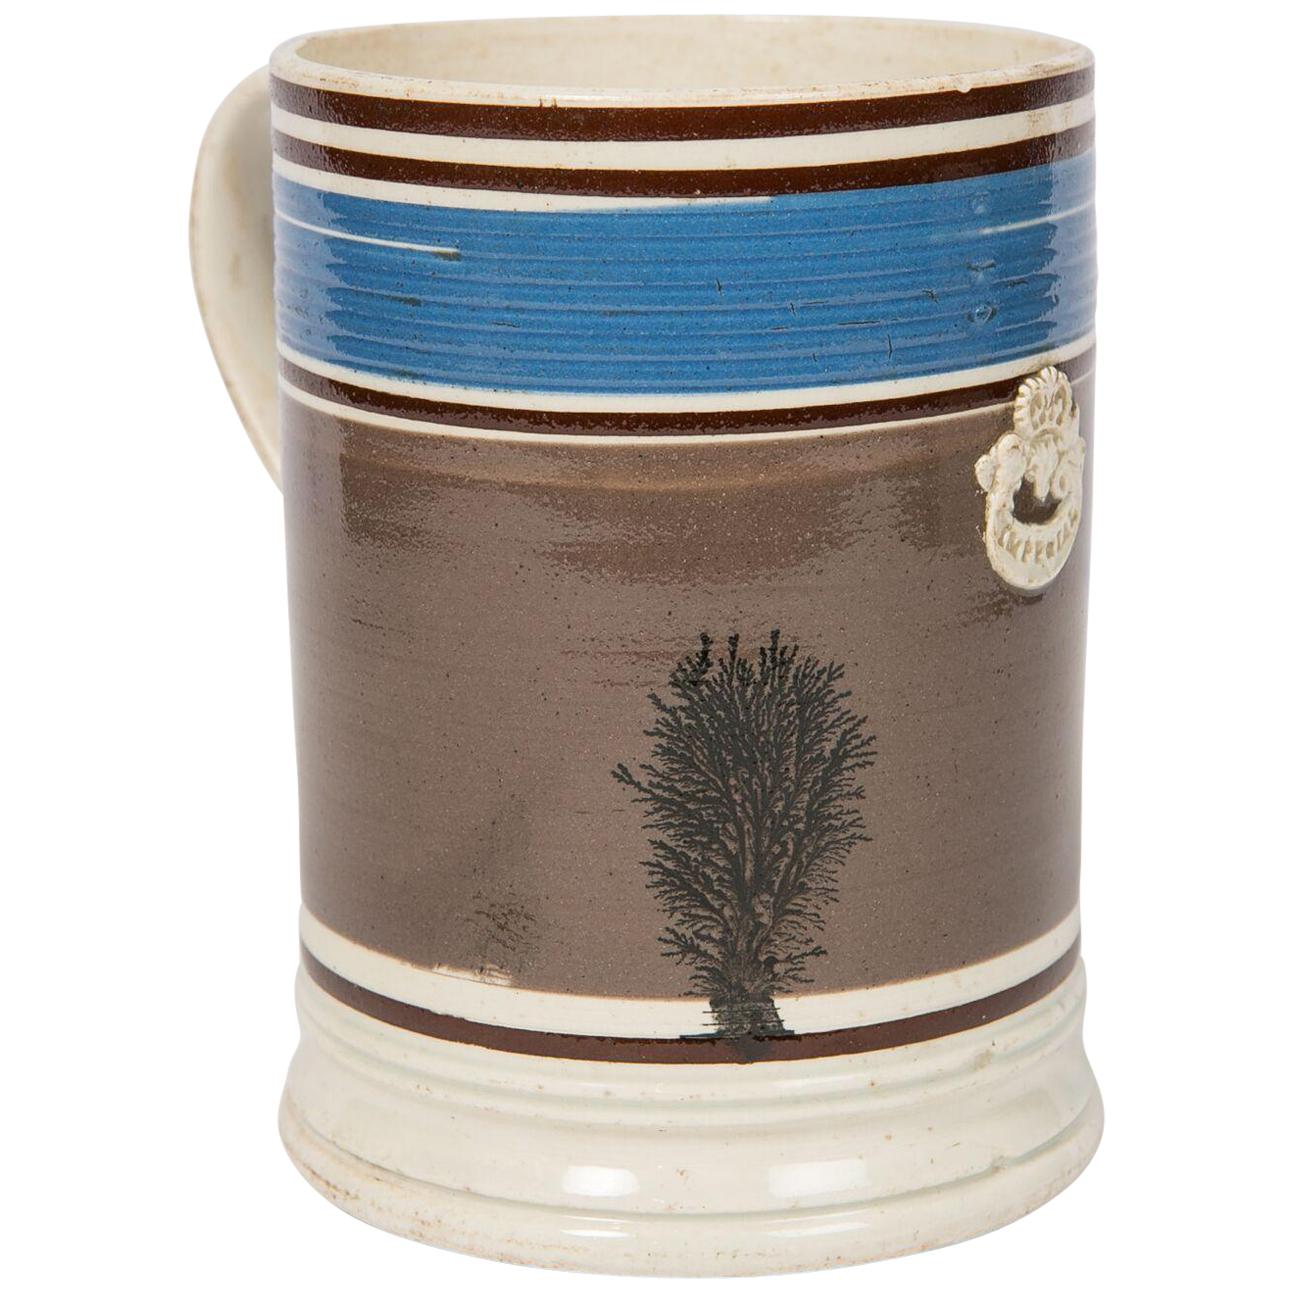 Imperial Quart Mochaware Mug, England, circa 1840